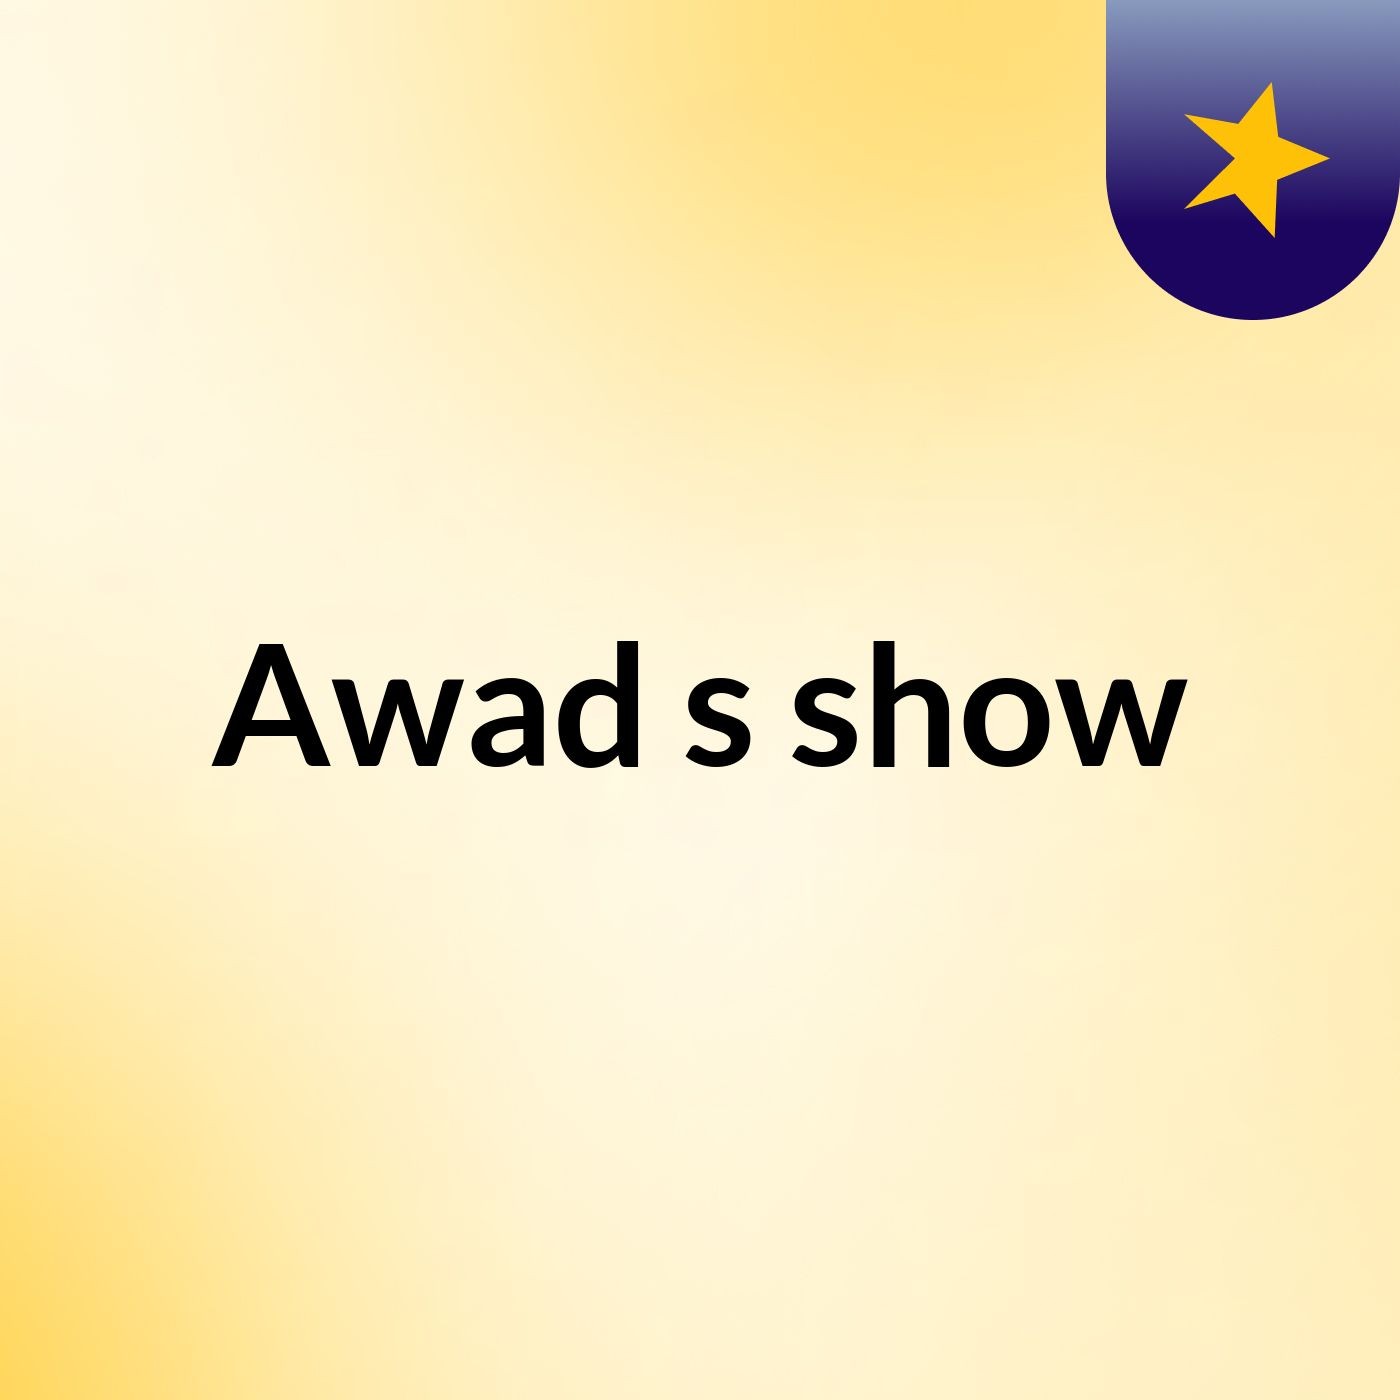 Awad's show